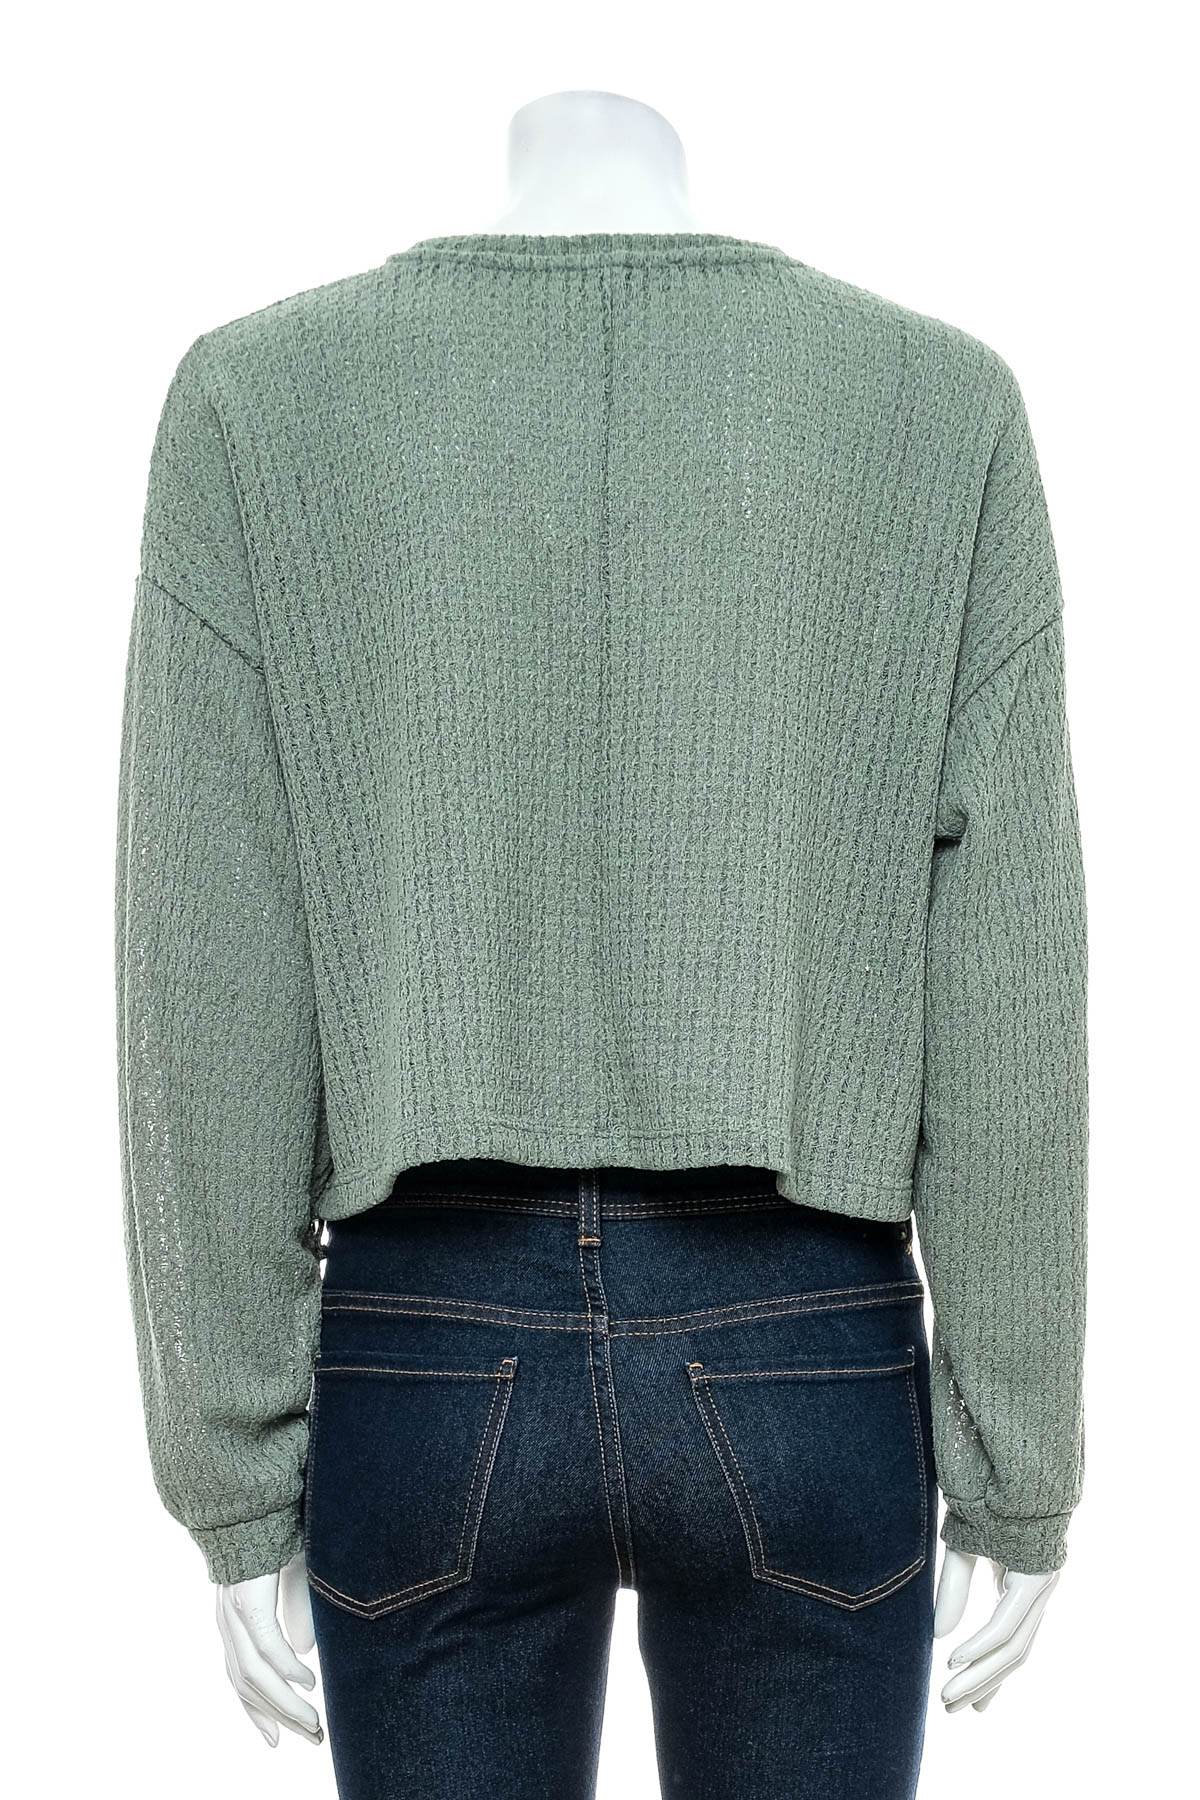 Women's sweater - Pull & Bear - 1